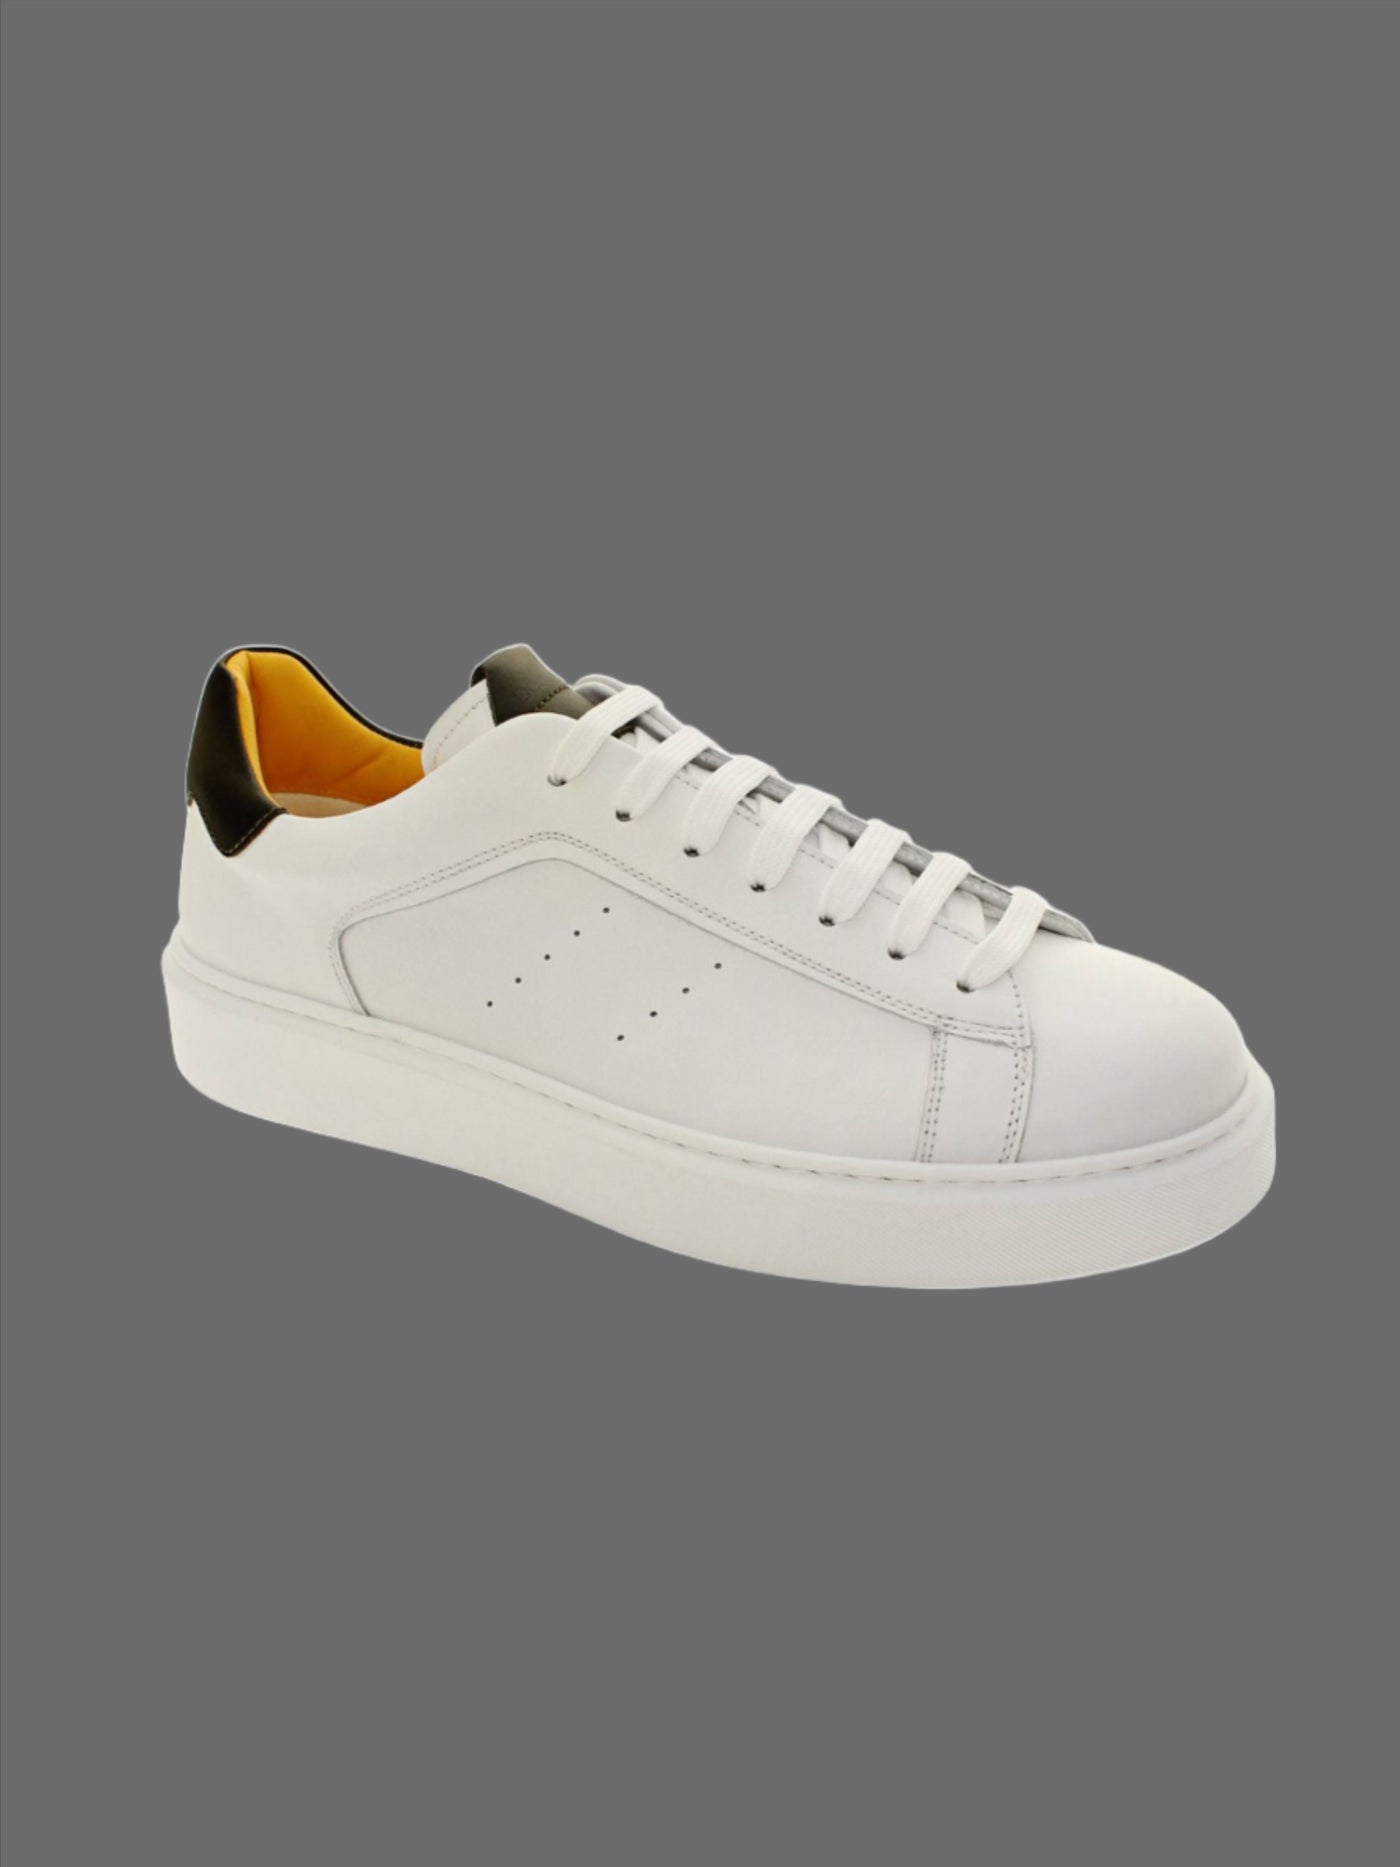 Lowtop Leather Sneaker - Hvid/Grøn